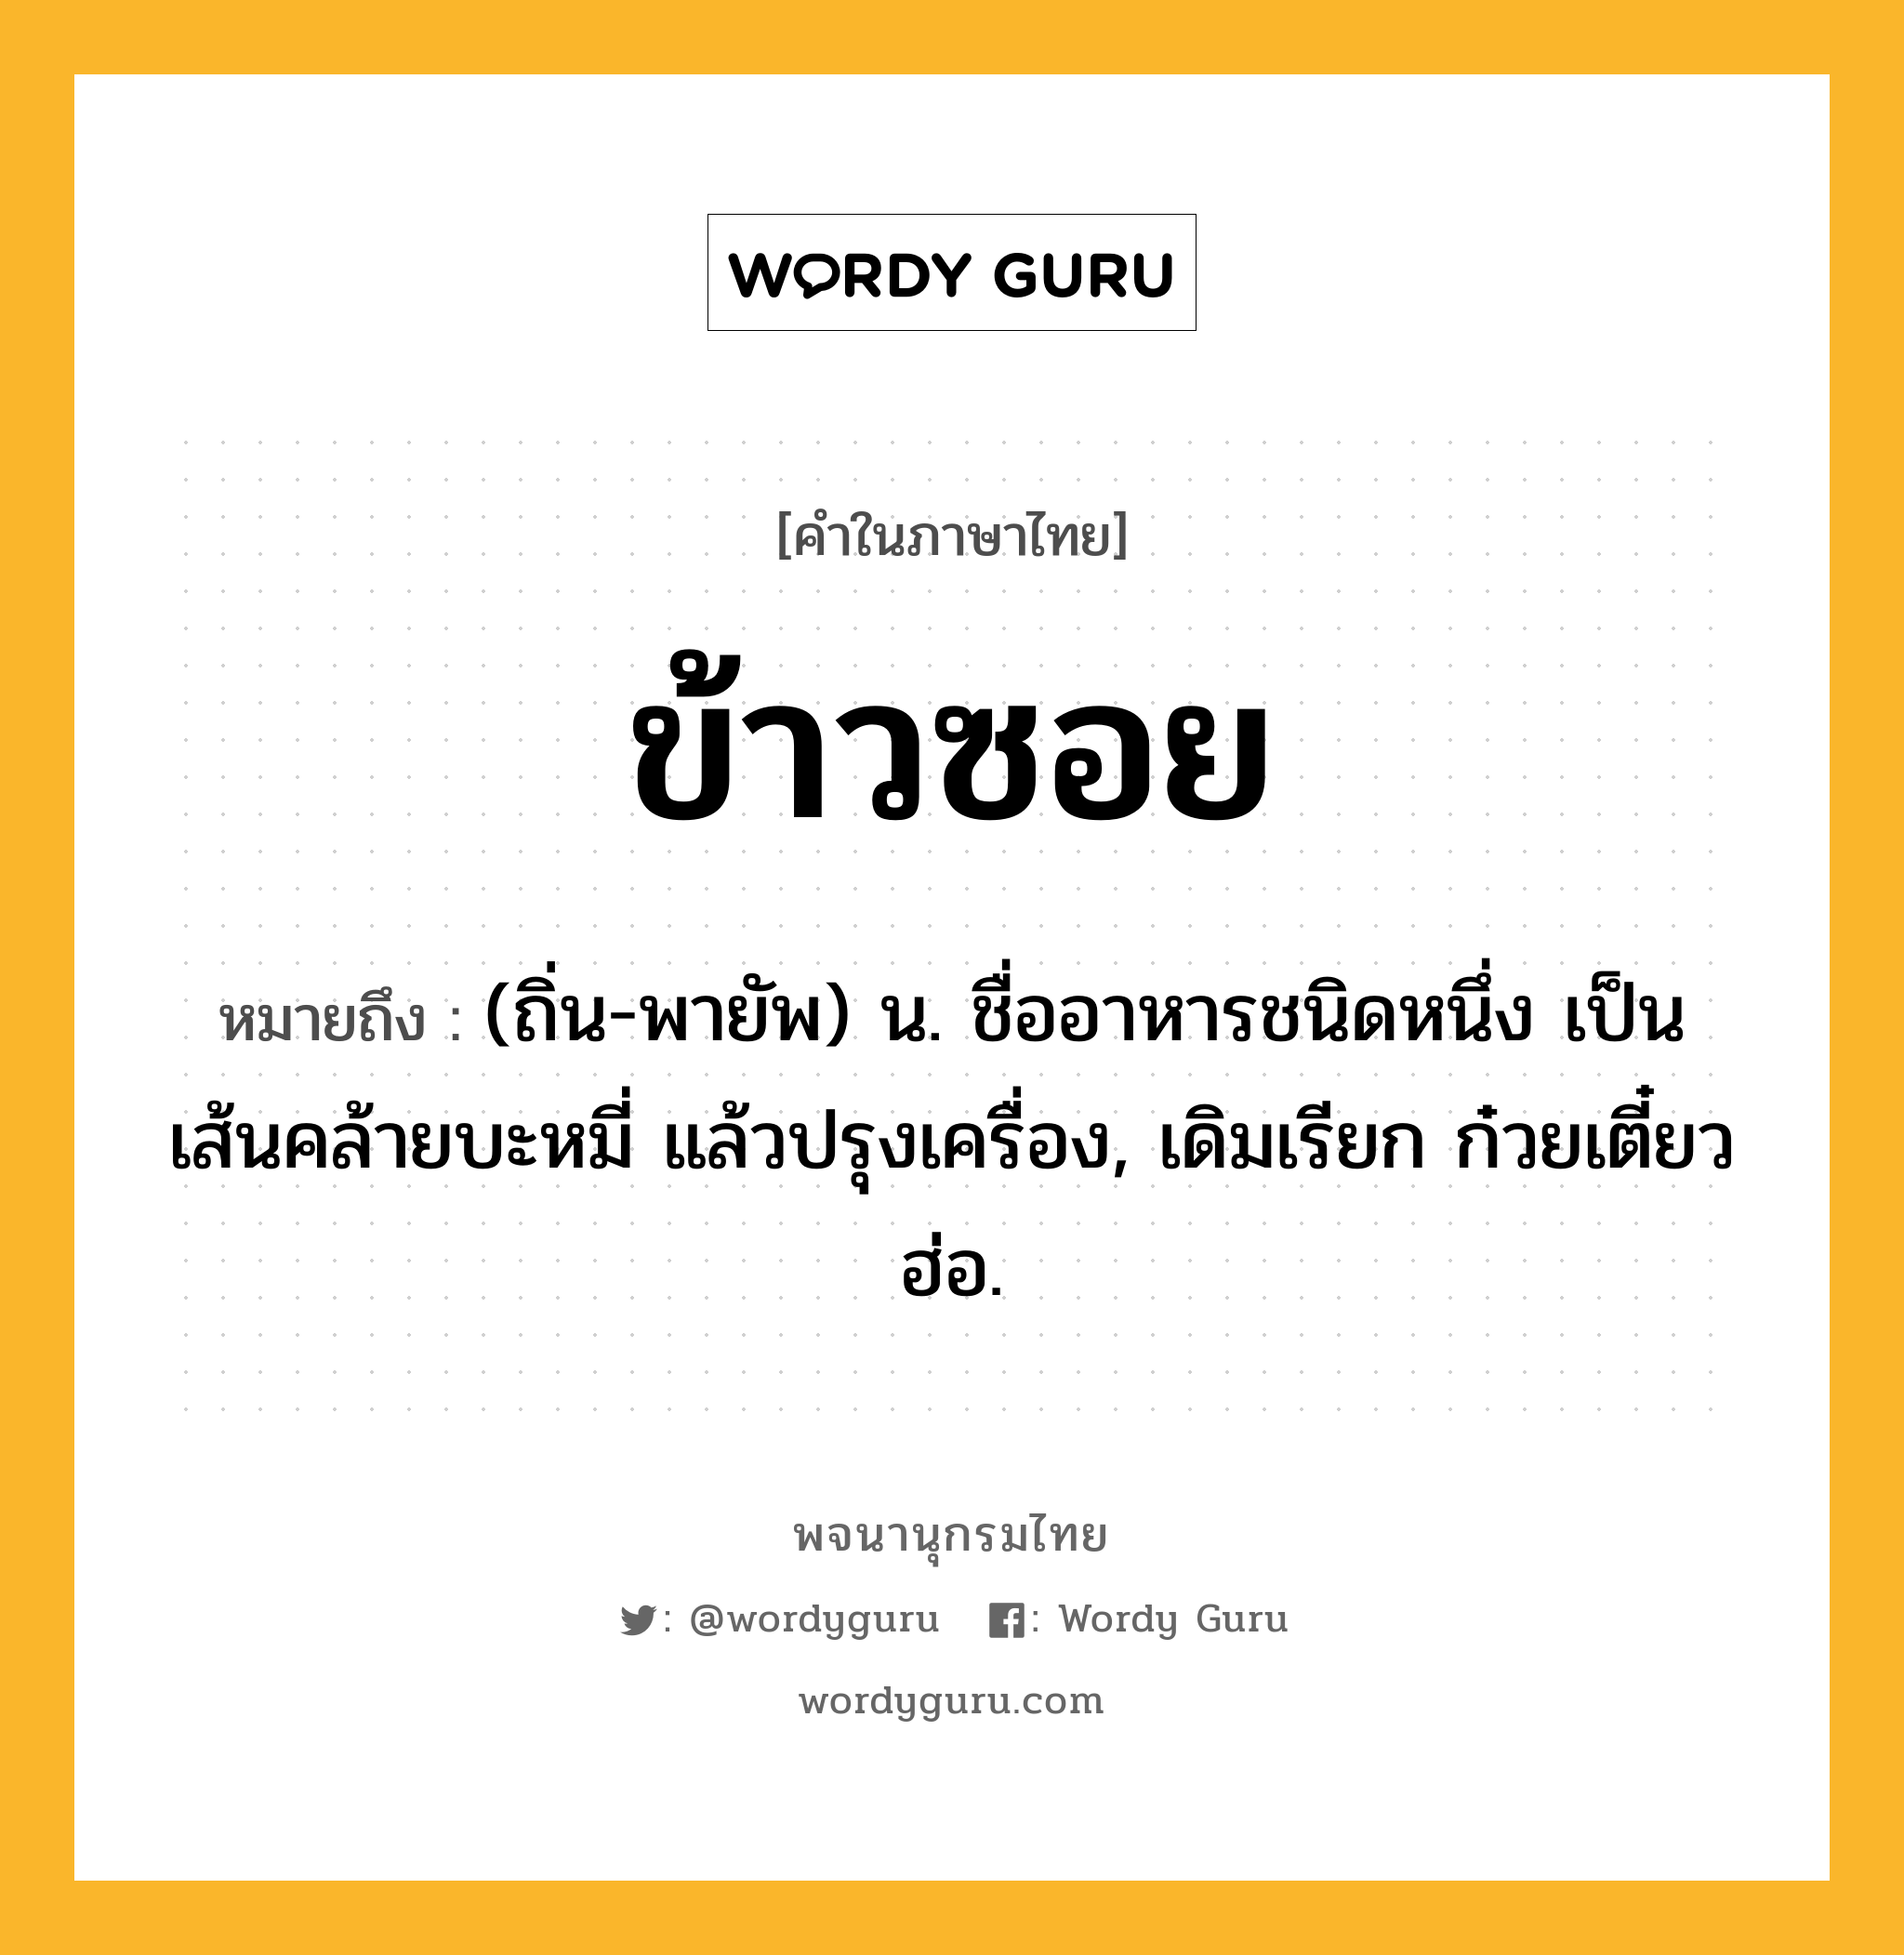 ข้าวซอย ความหมาย หมายถึงอะไร?, คำในภาษาไทย ข้าวซอย หมายถึง (ถิ่น-พายัพ) น. ชื่ออาหารชนิดหนึ่ง เป็นเส้นคล้ายบะหมี่ แล้วปรุงเครื่อง, เดิมเรียก ก๋วยเตี๋ยวฮ่อ.